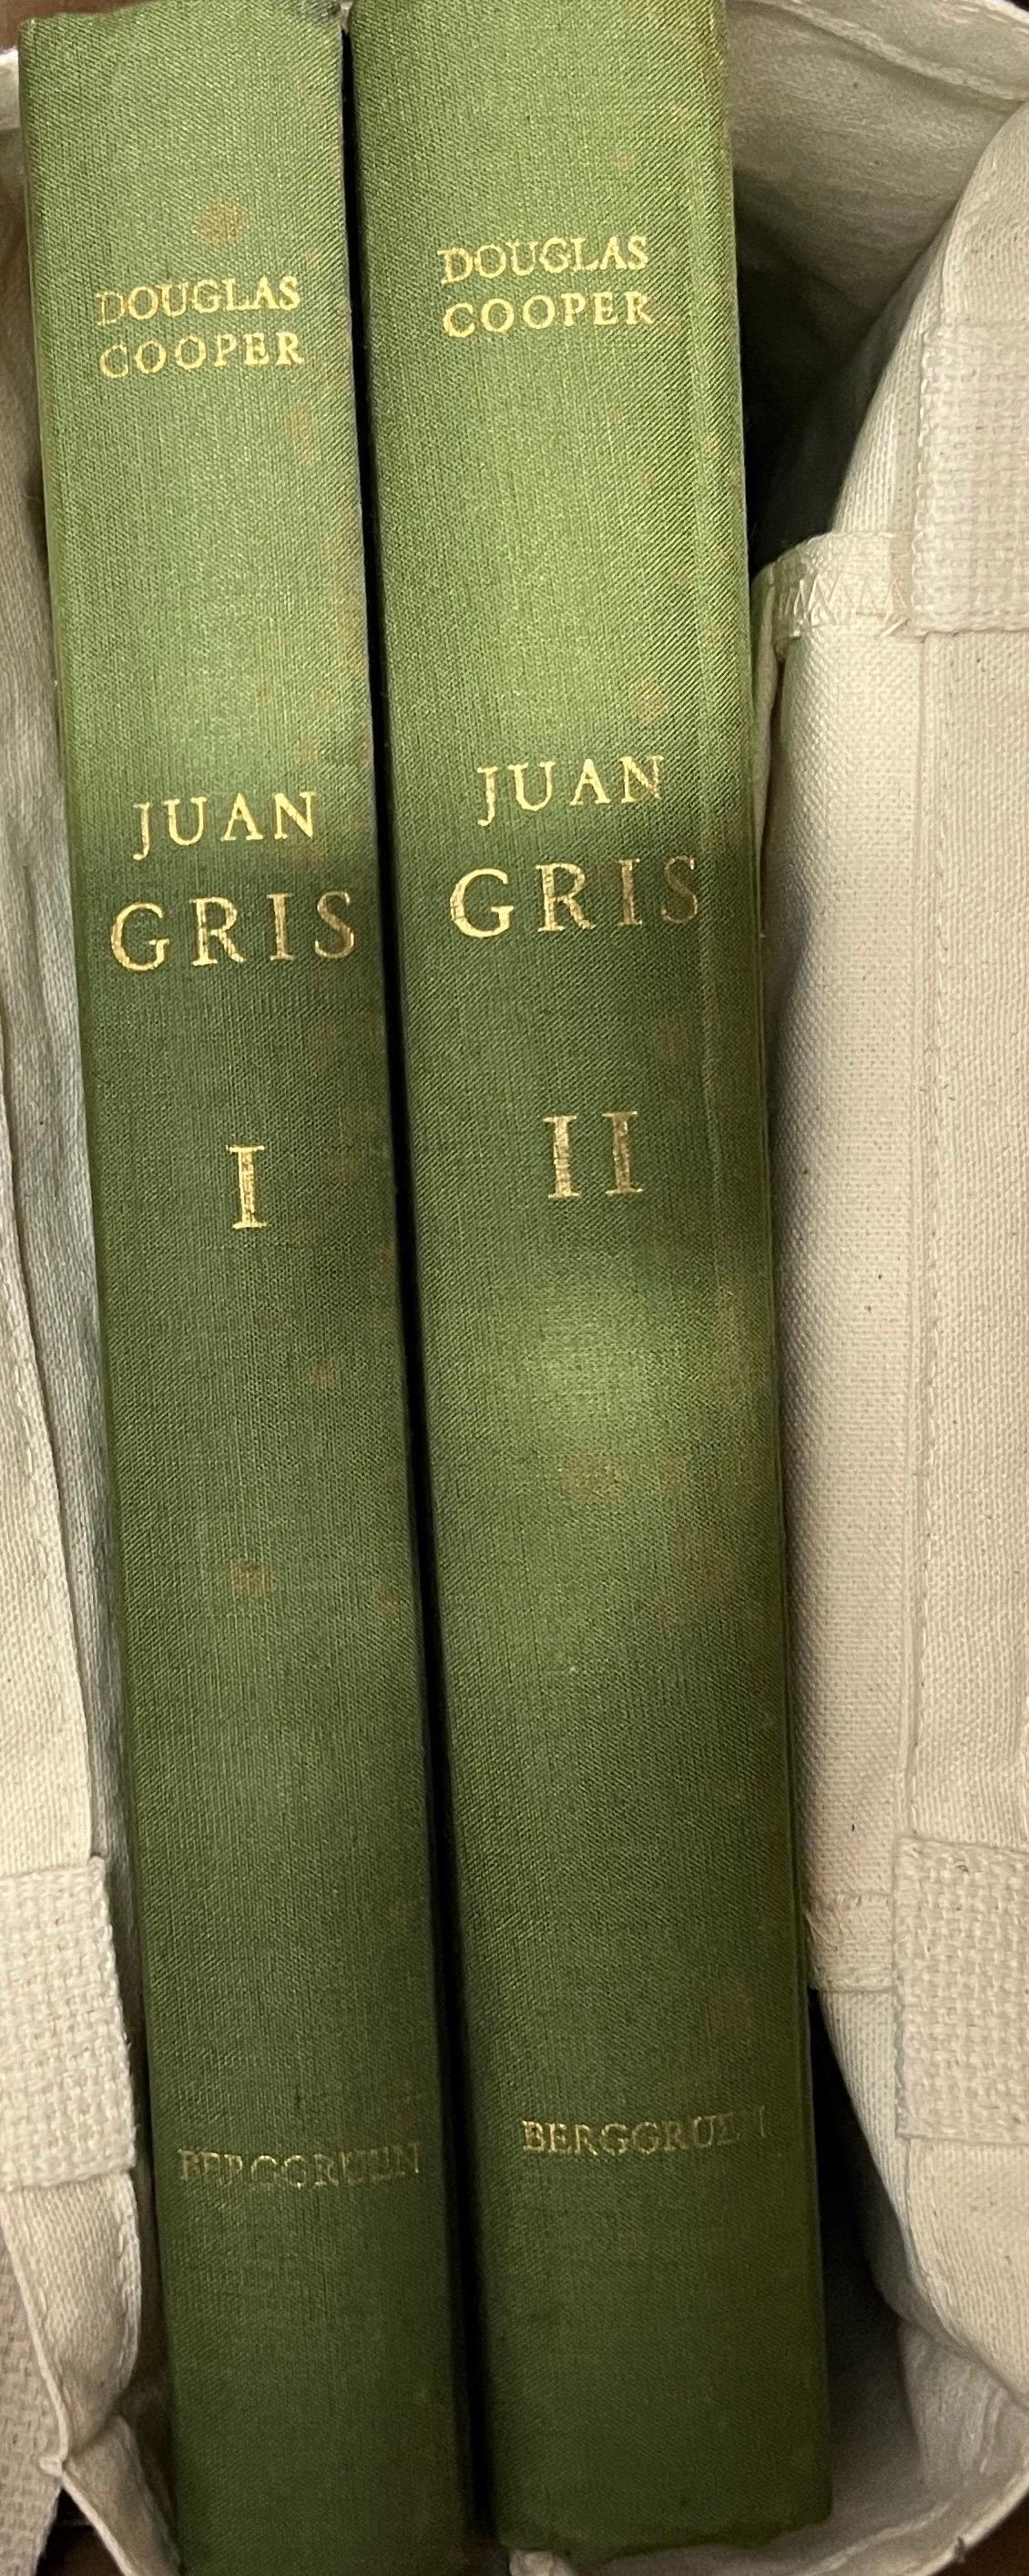 Juan Gris : Catalogue Raisonné  - Print de Douglas Cooper